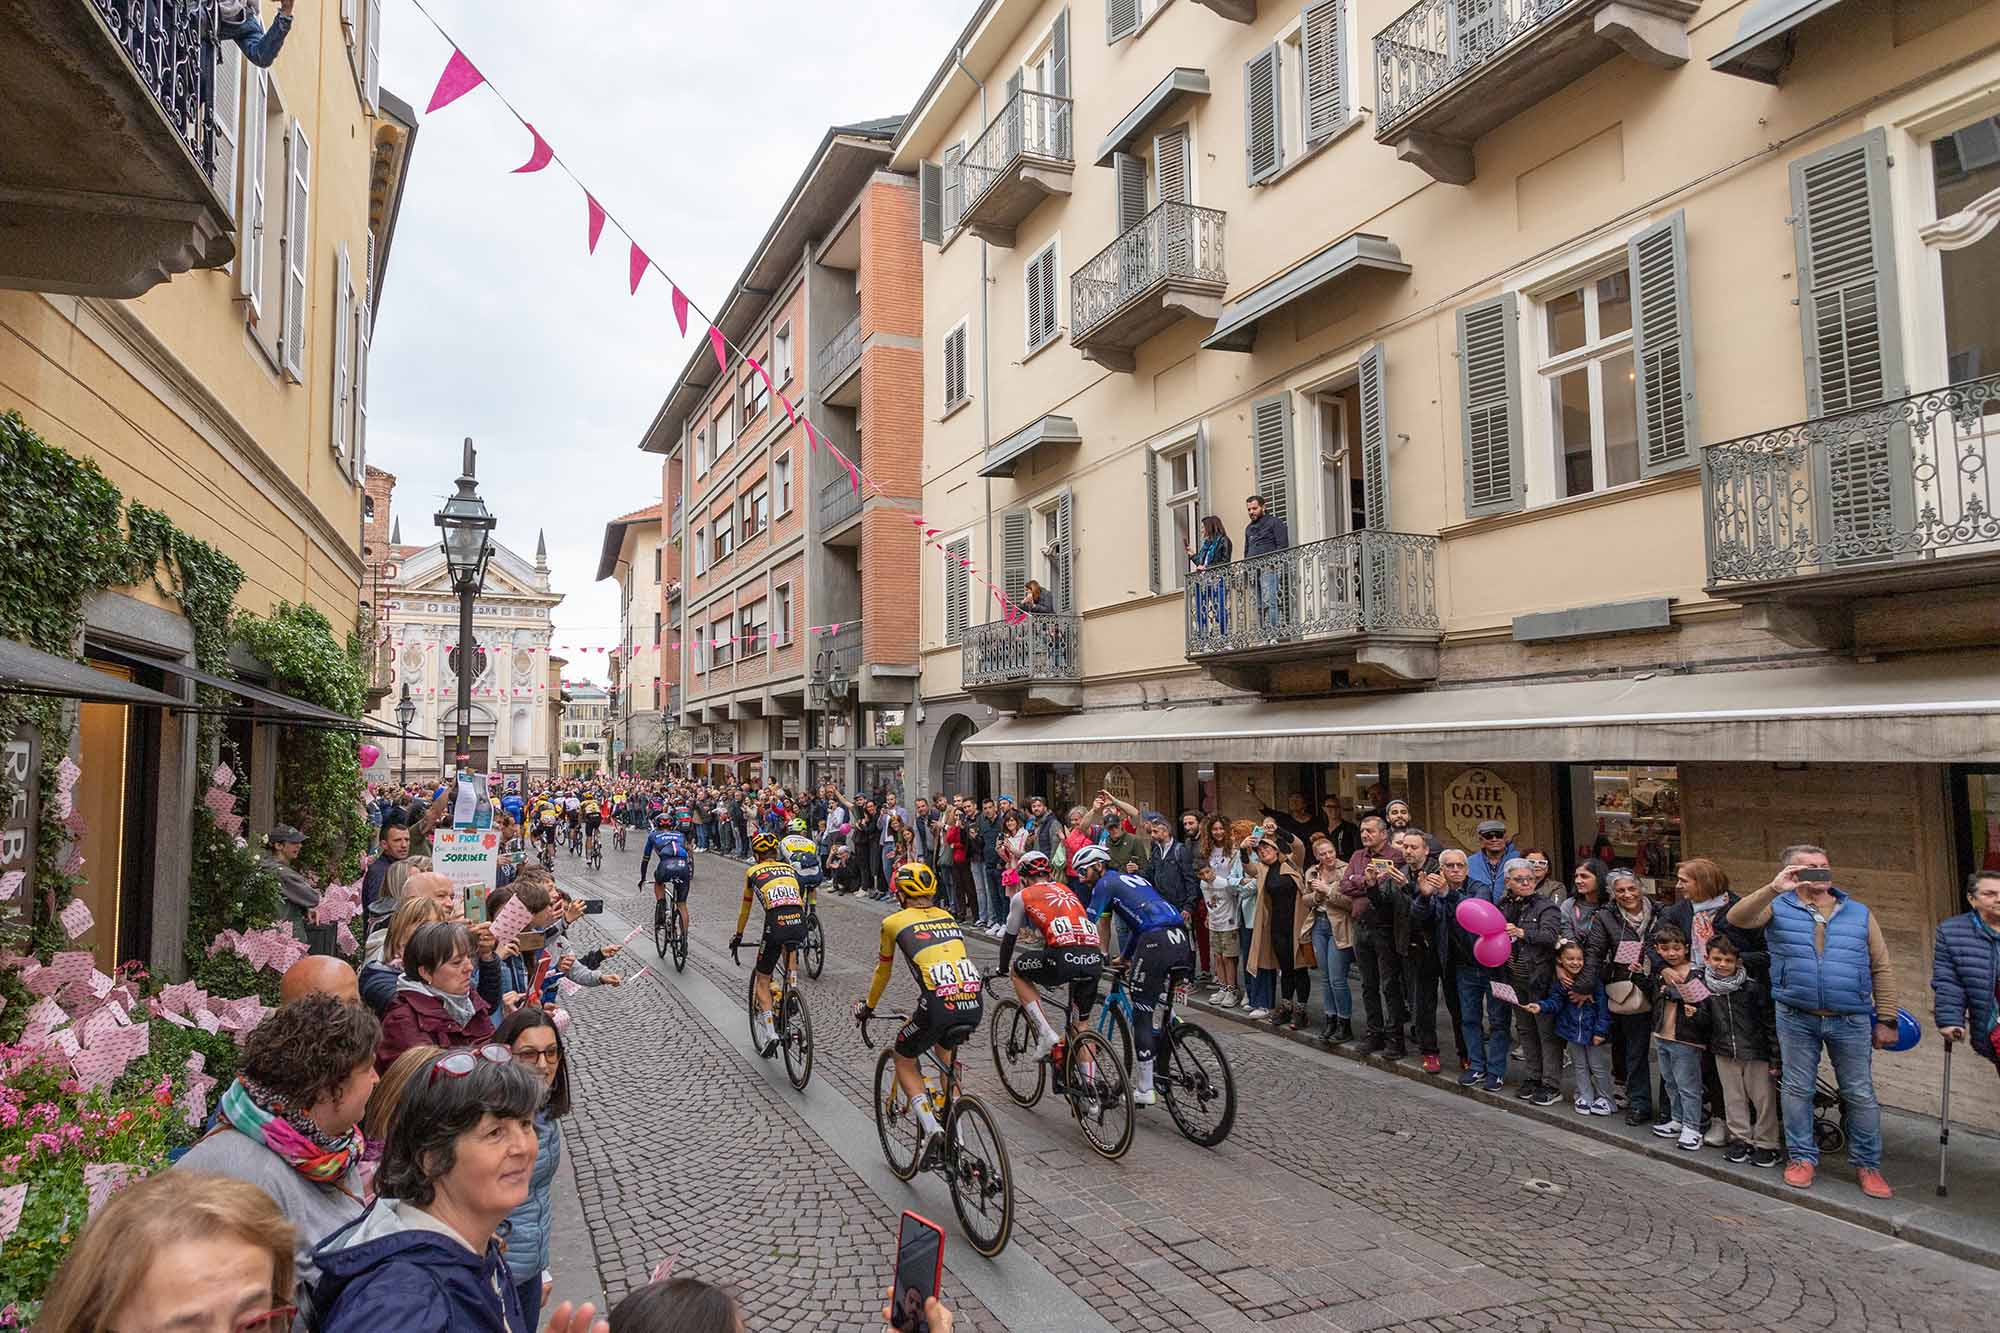 Basso Fotografia foto di evento Giro Italia Bra 2023